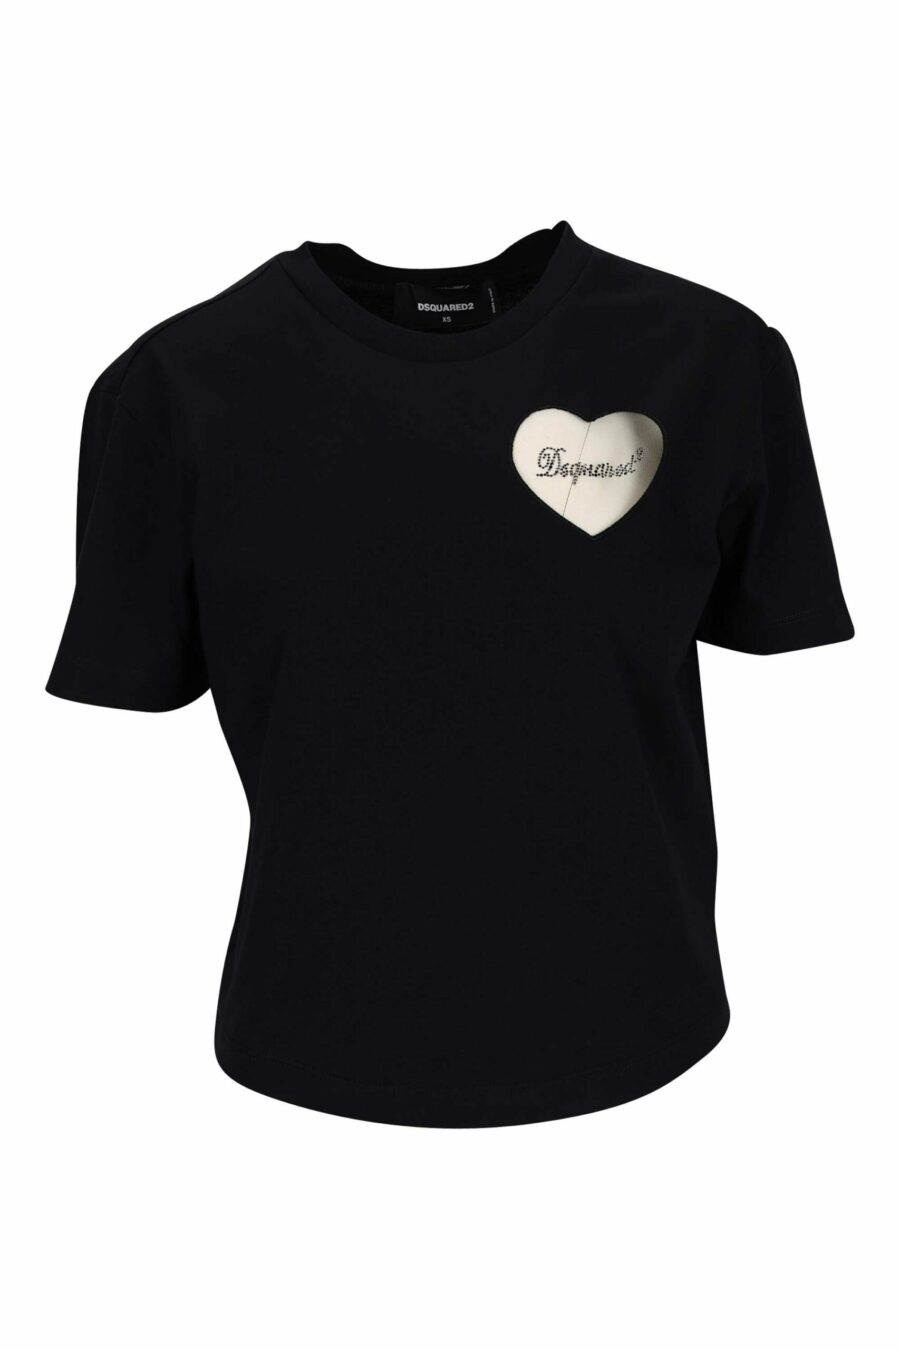 Camiseta negra con logo corazón transparente - 8054148332044 scaled